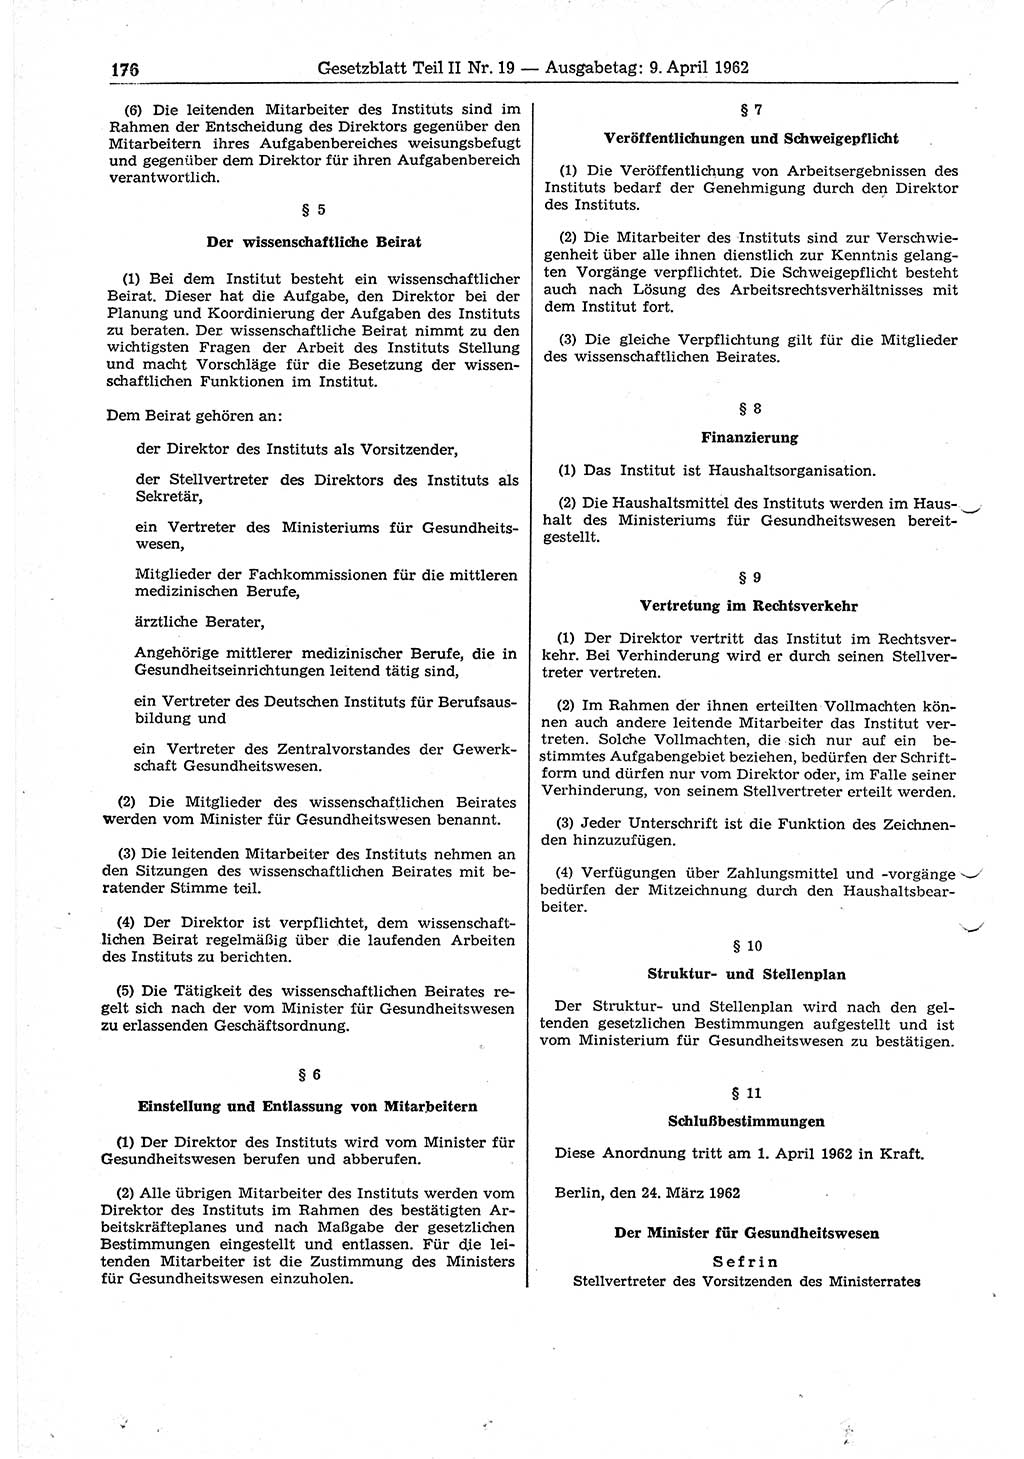 Gesetzblatt (GBl.) der Deutschen Demokratischen Republik (DDR) Teil ⅠⅠ 1962, Seite 176 (GBl. DDR ⅠⅠ 1962, S. 176)